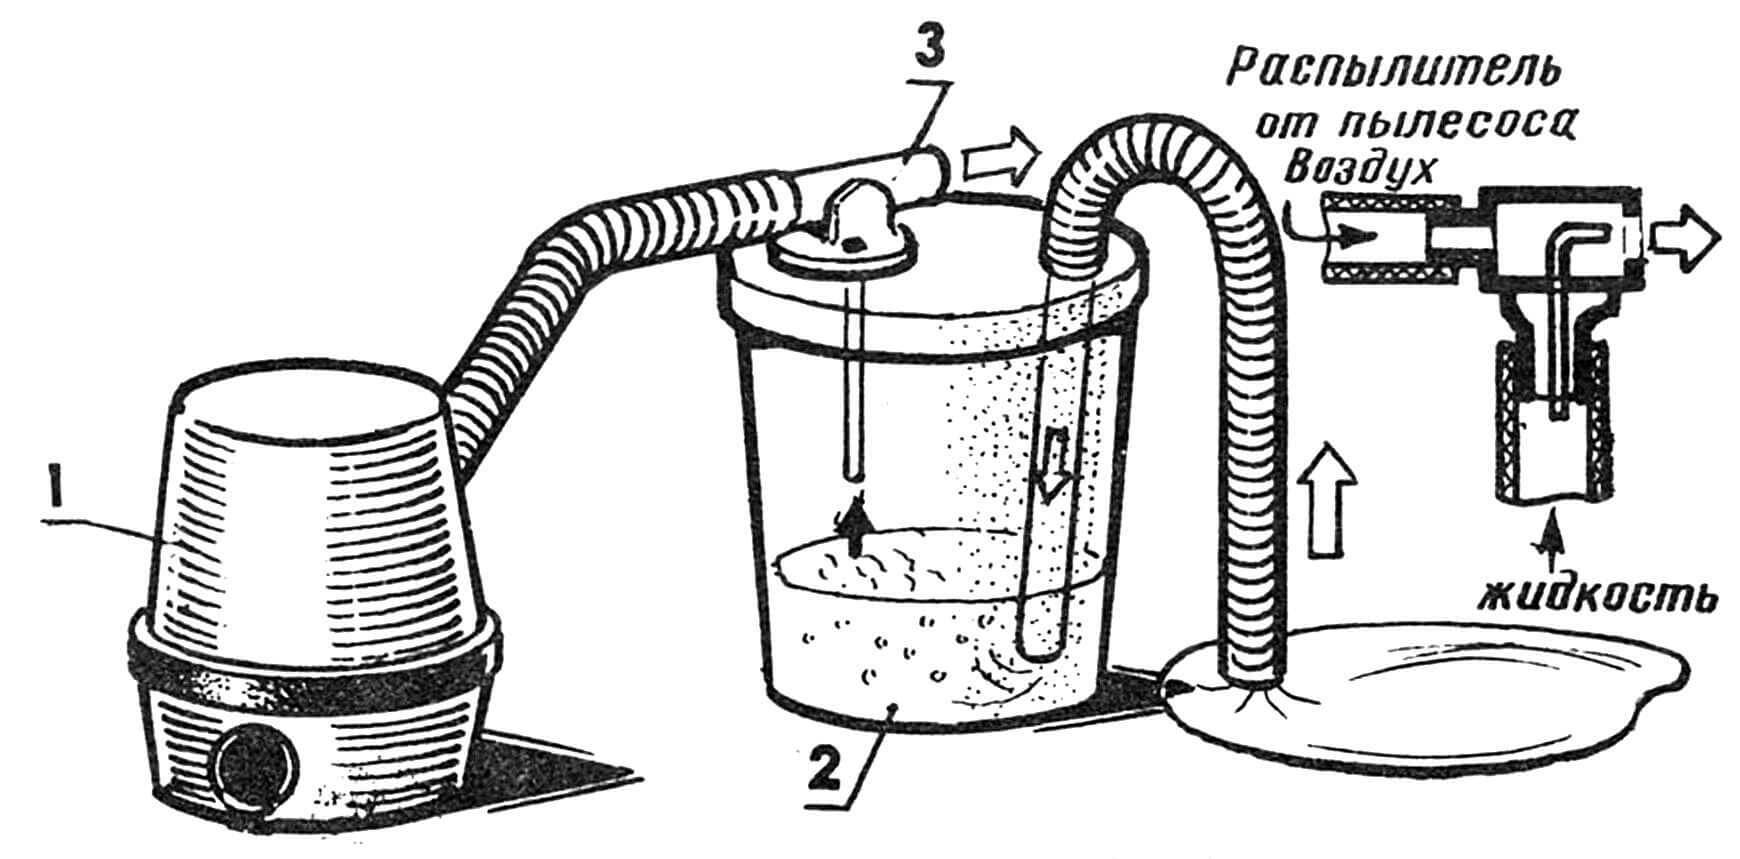 Пылесос-«водосос» на базе штатного распылителя: 1 — пылесос, 2 — емкость, 3 — распылитель.